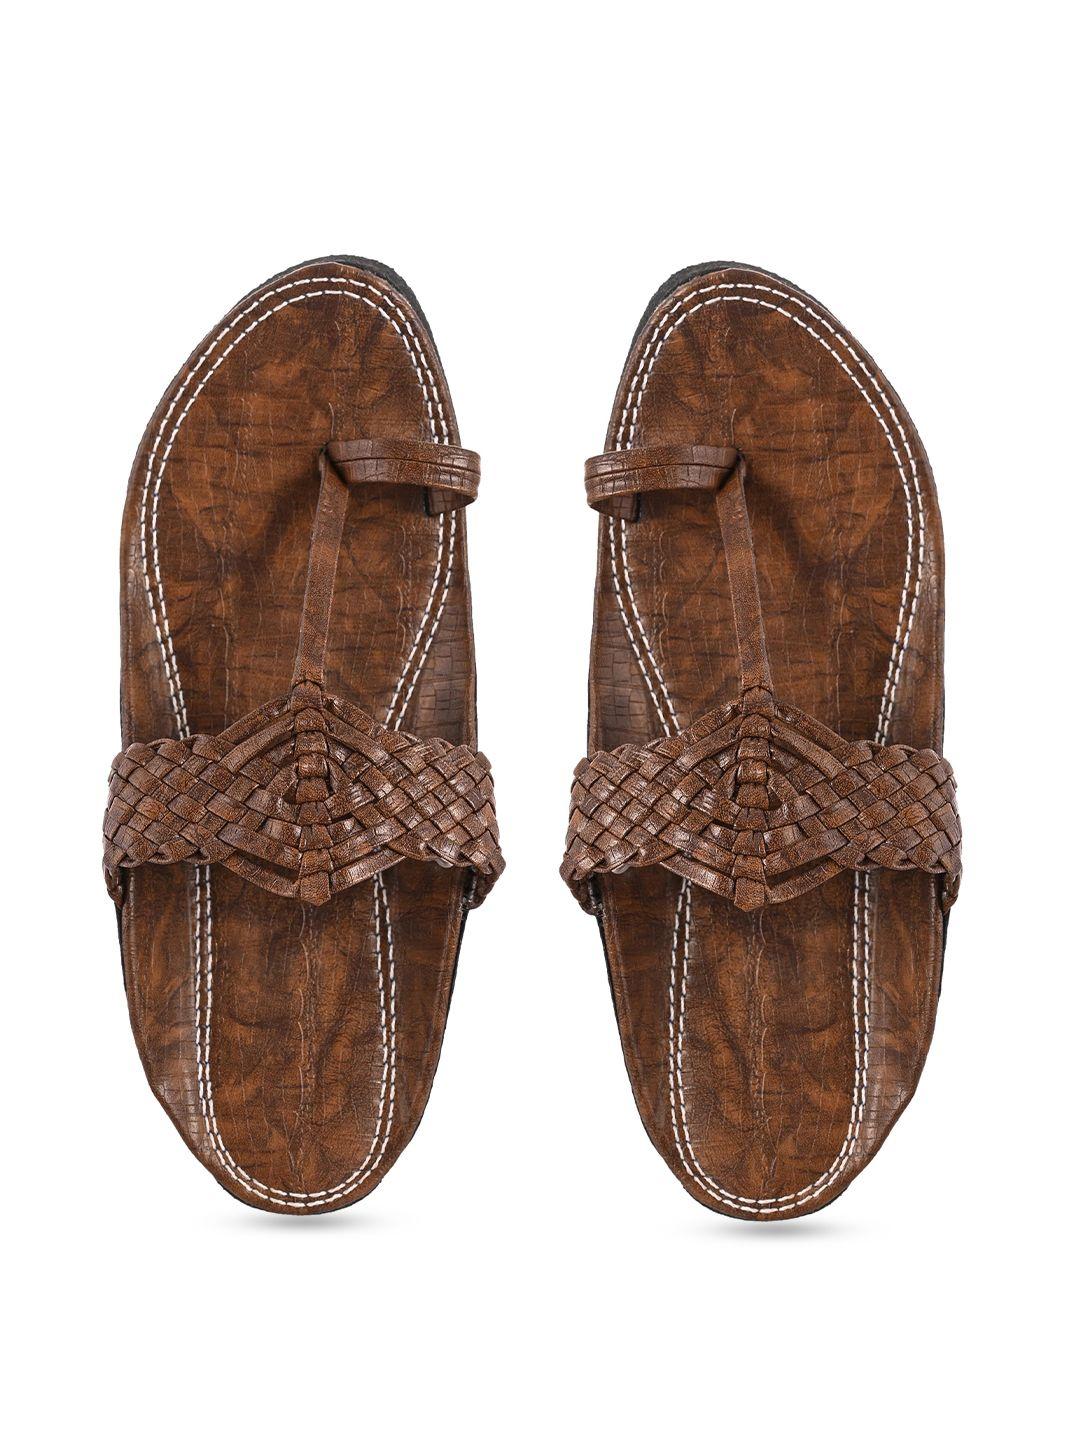 aristitch men brown ethnic comfort sandals